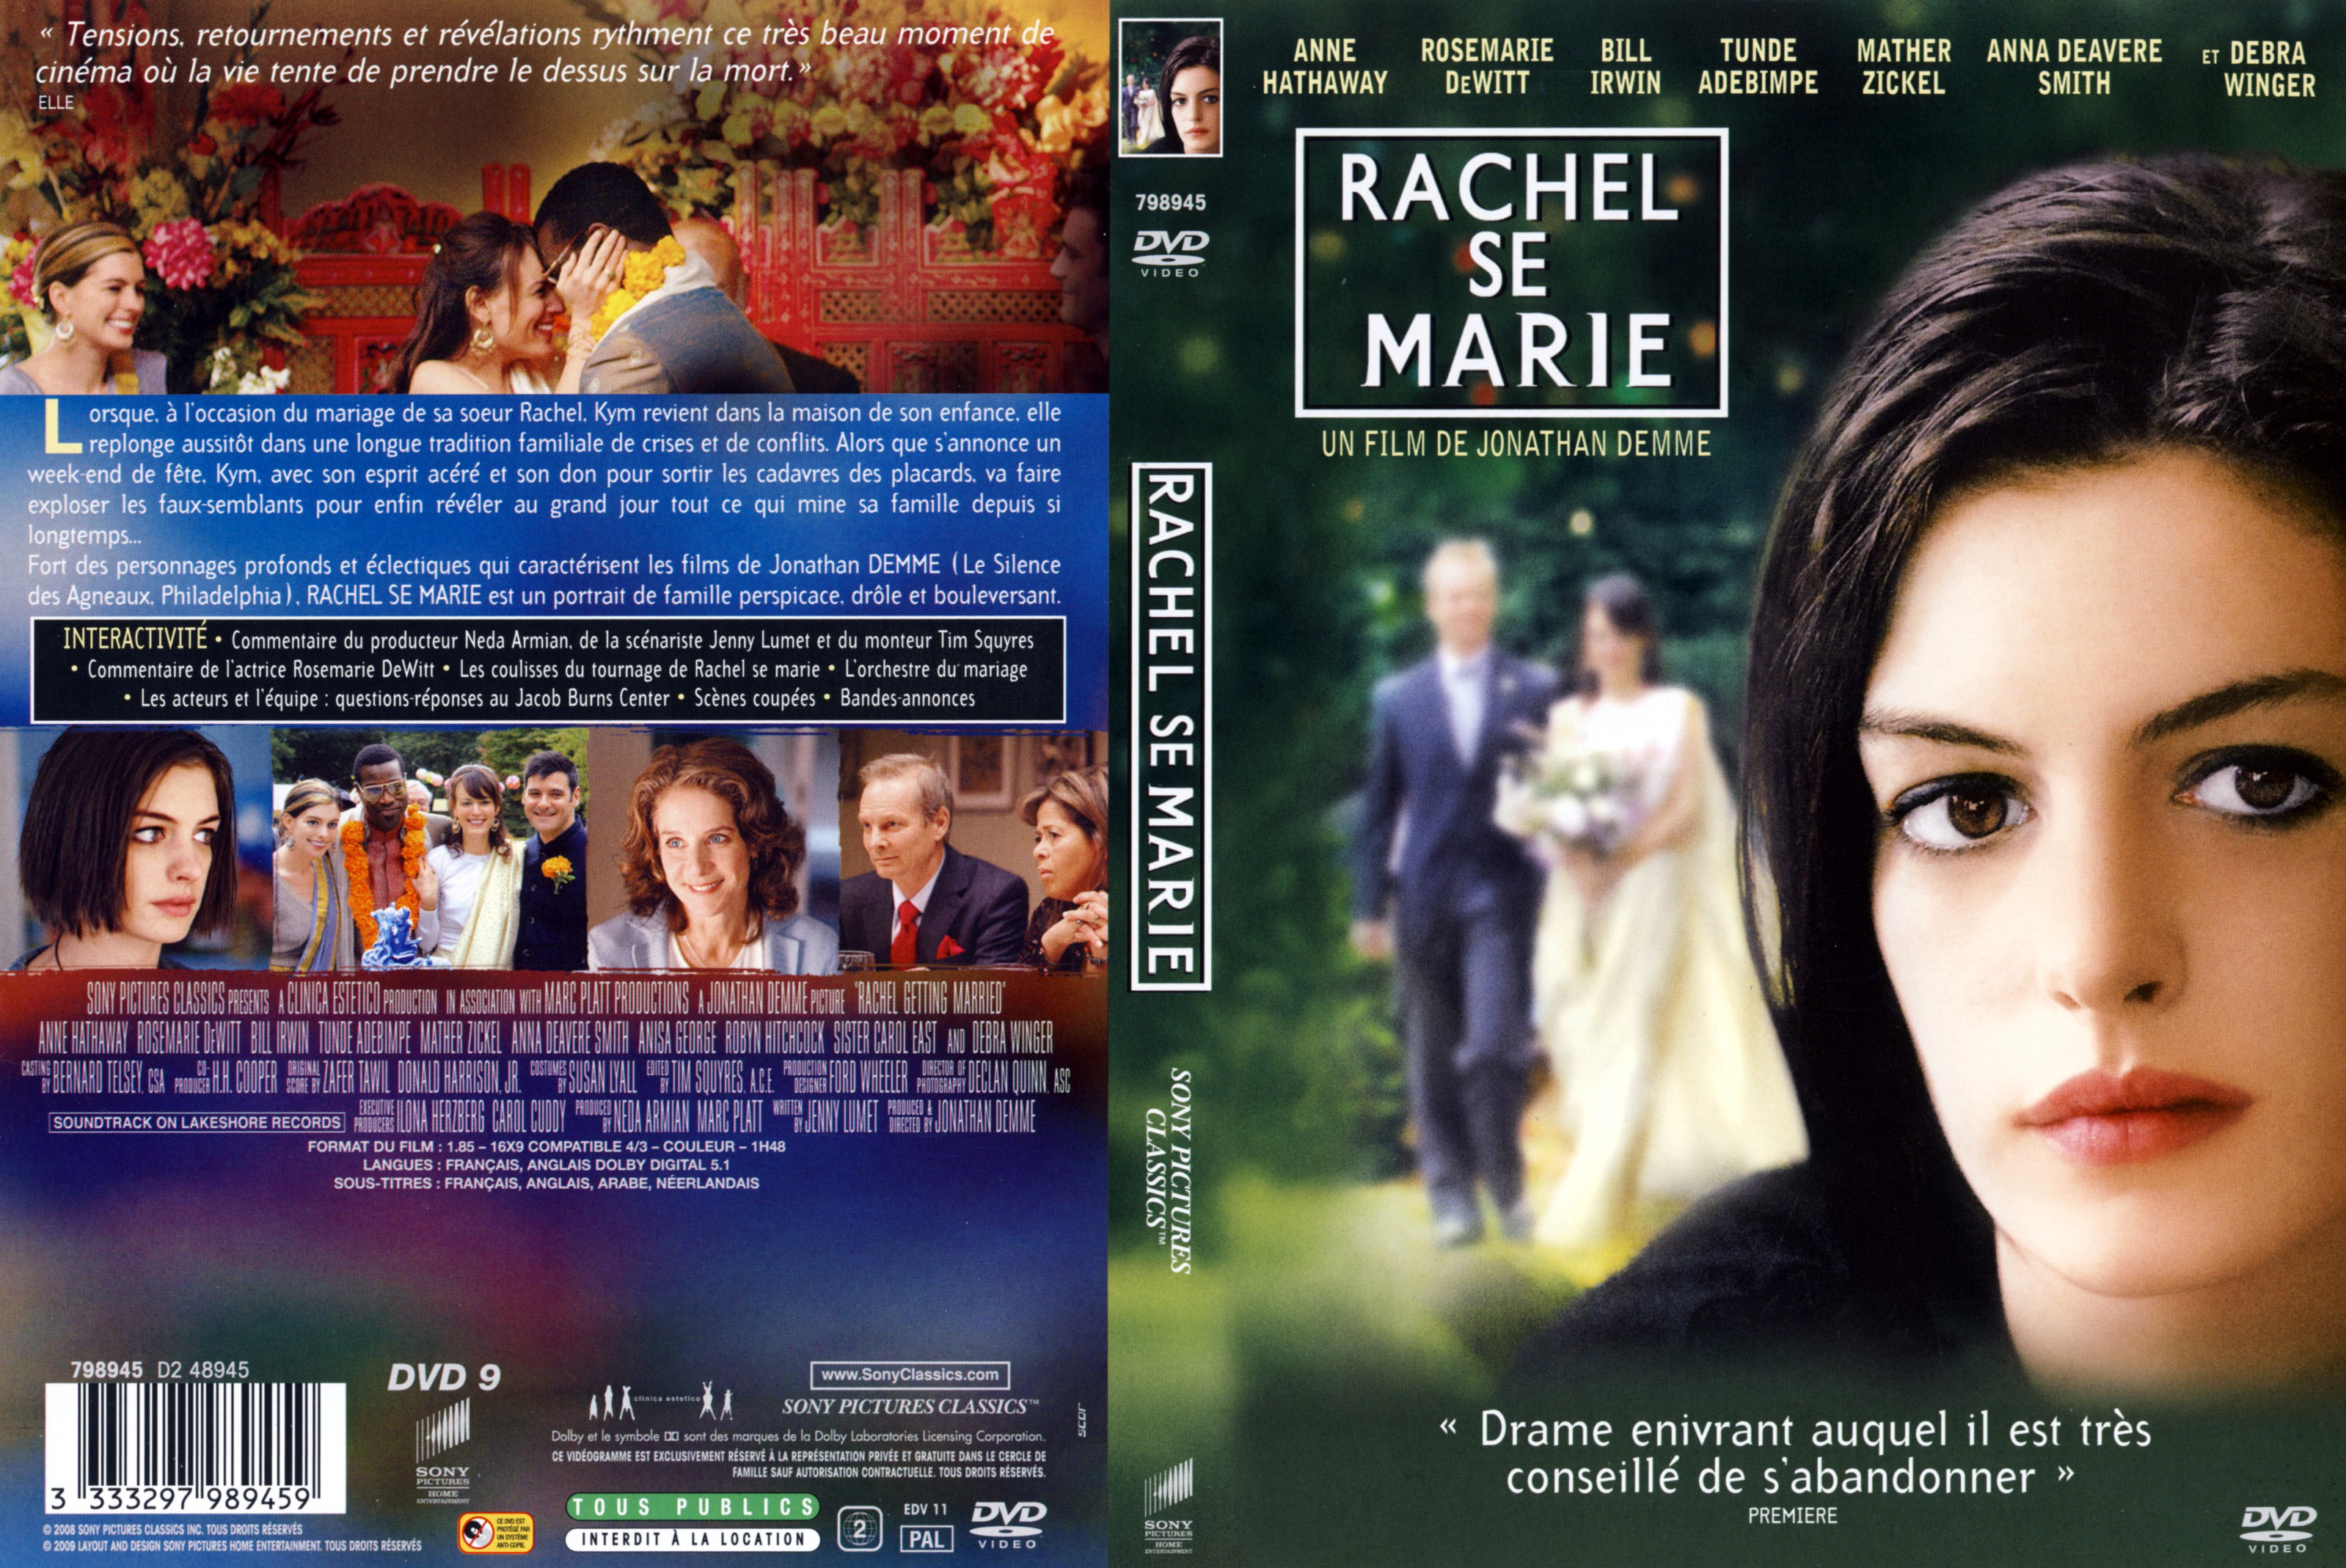 Jaquette DVD Rachel se marie